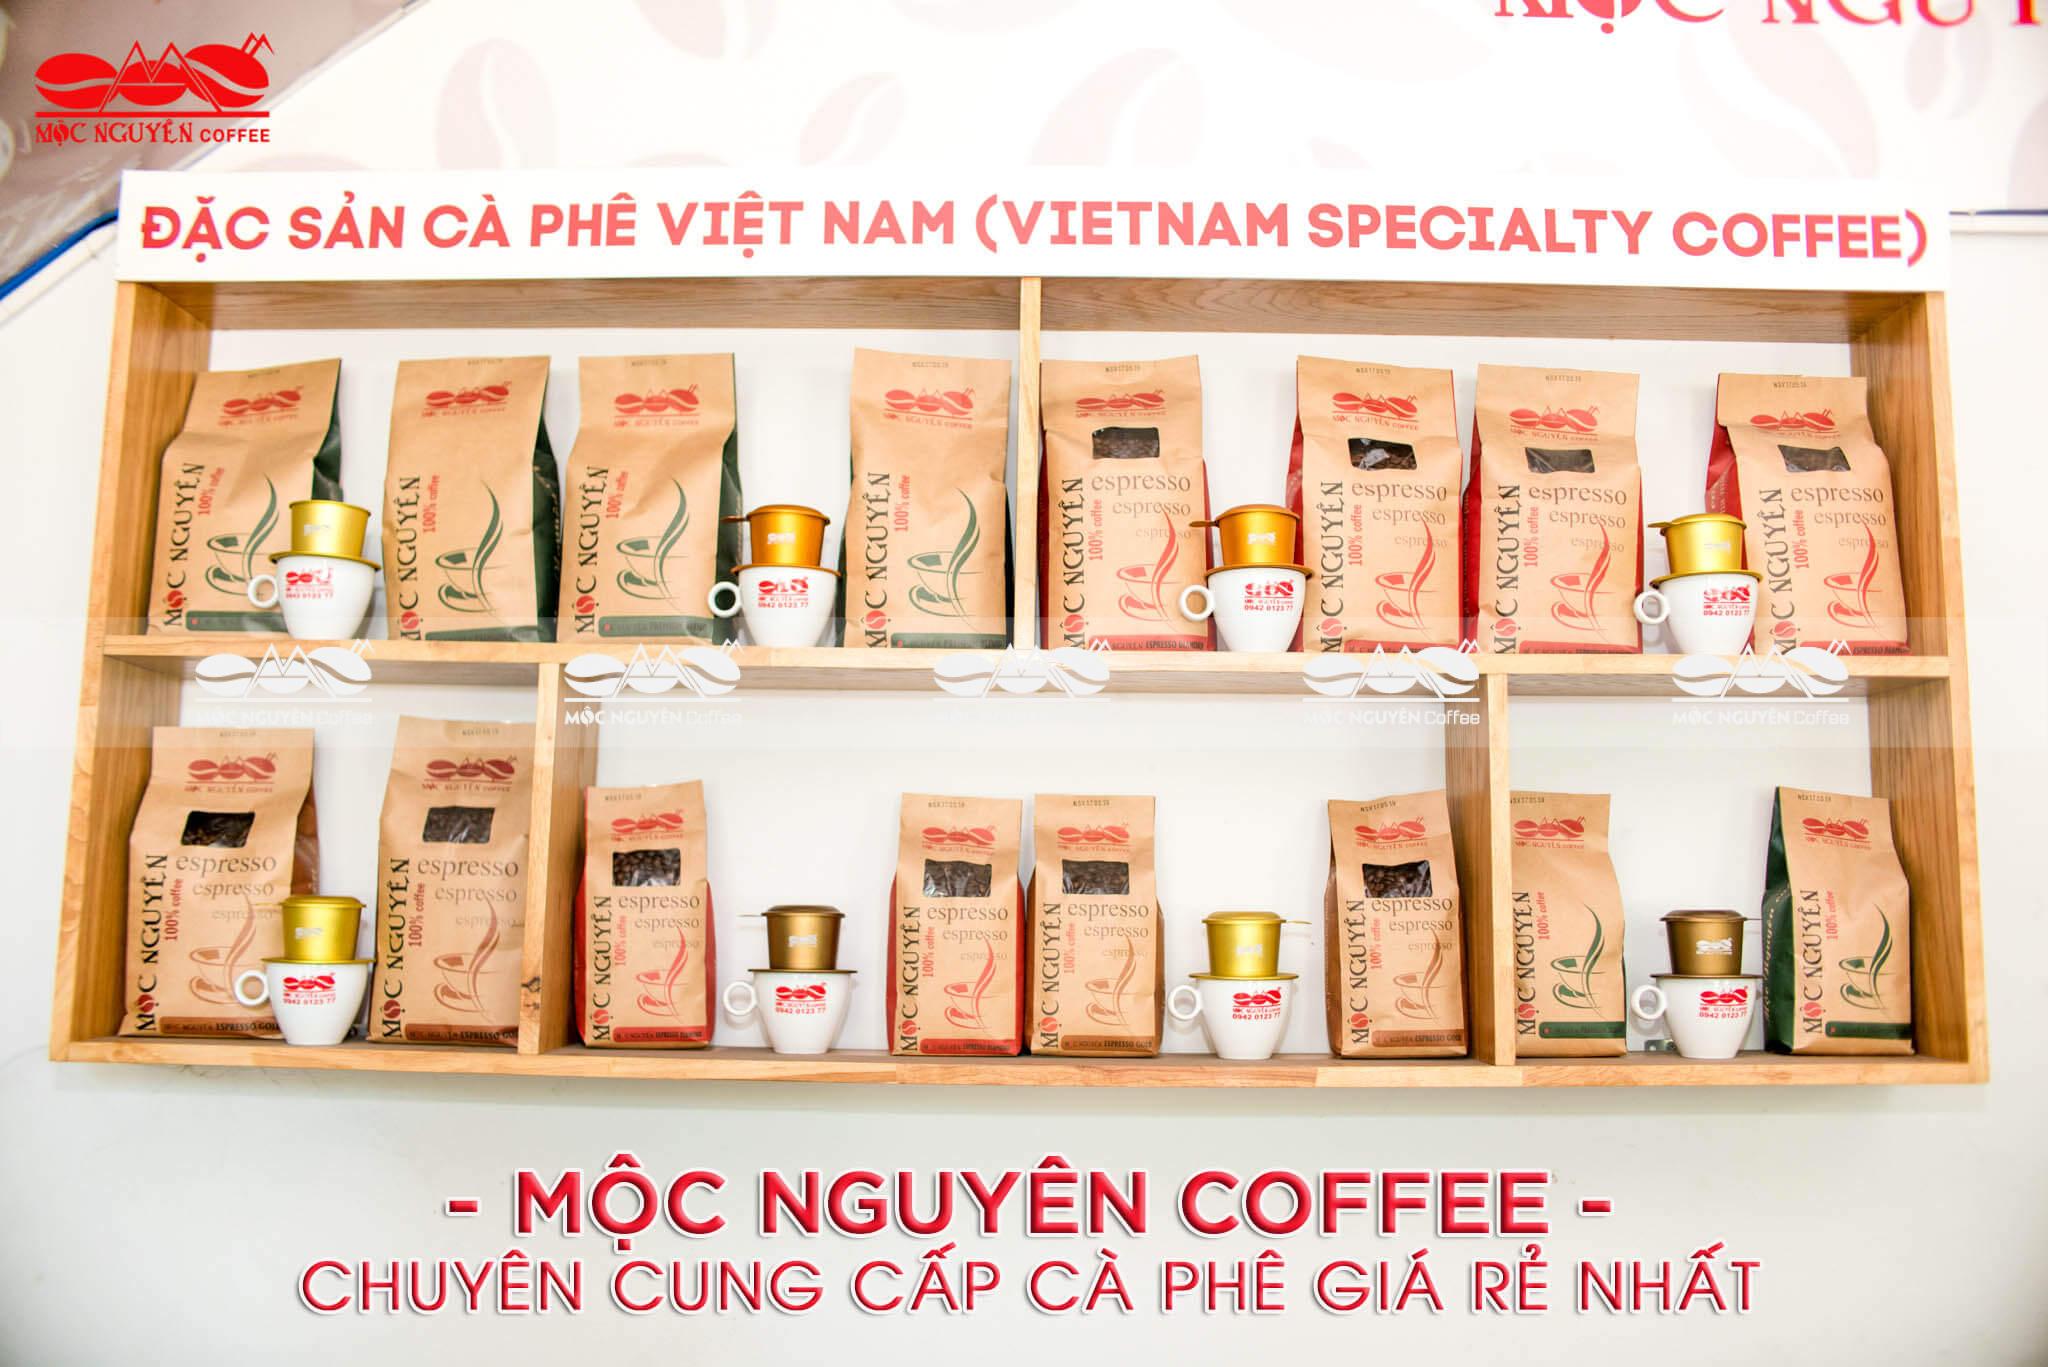 moc-nguyen-coffee-chuyen-cung-cap-ca-phe-gia-re-nhat